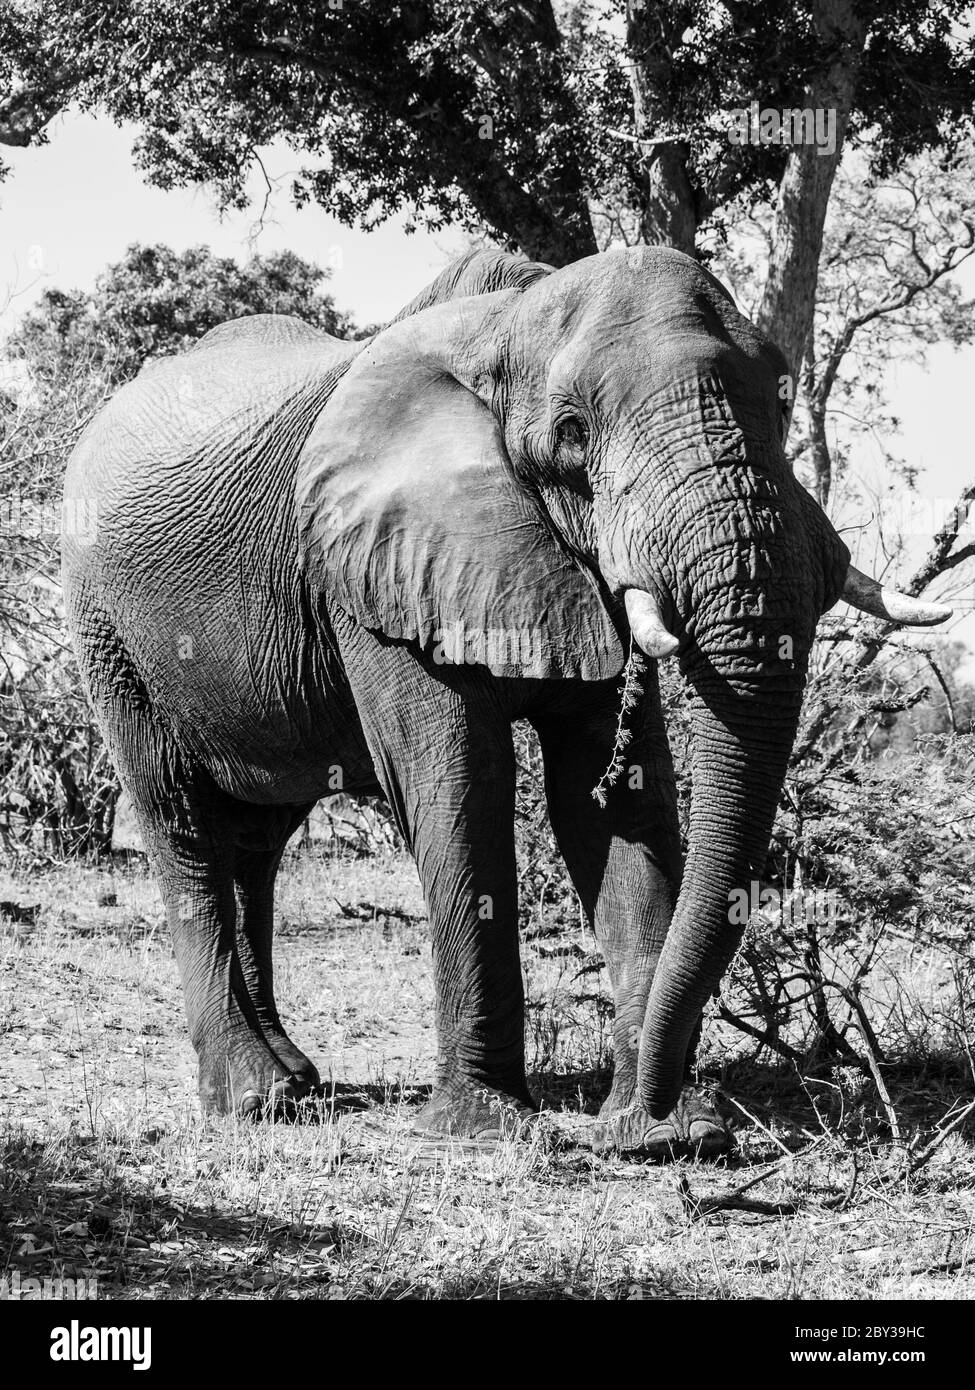 Elefante africano de pie en el día soleado (Moremi Game Reserve, Botswana) Foto de stock